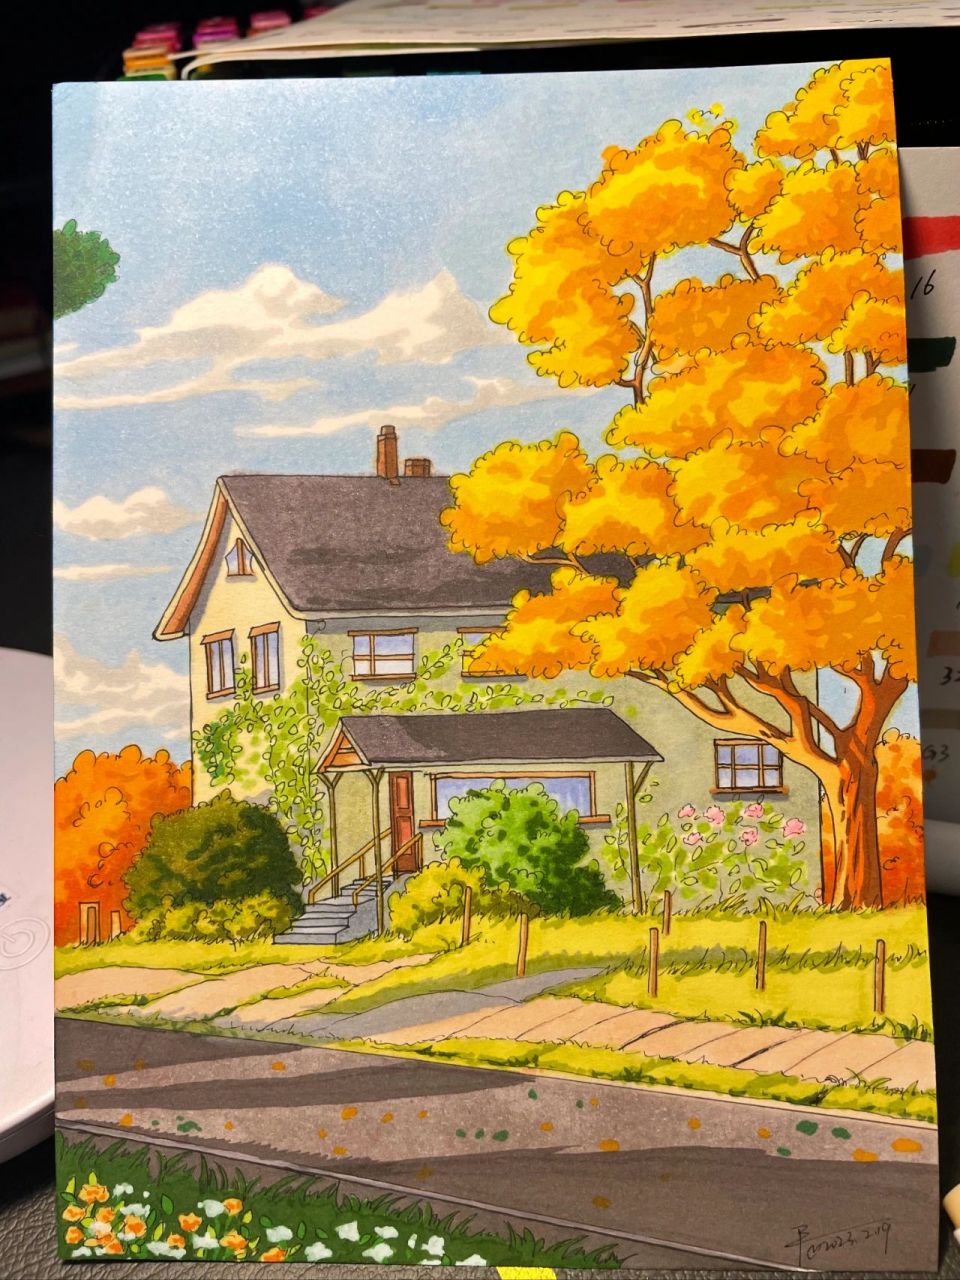 马克笔手绘,风景画 有点秋天感觉的风景画,小治愈一下